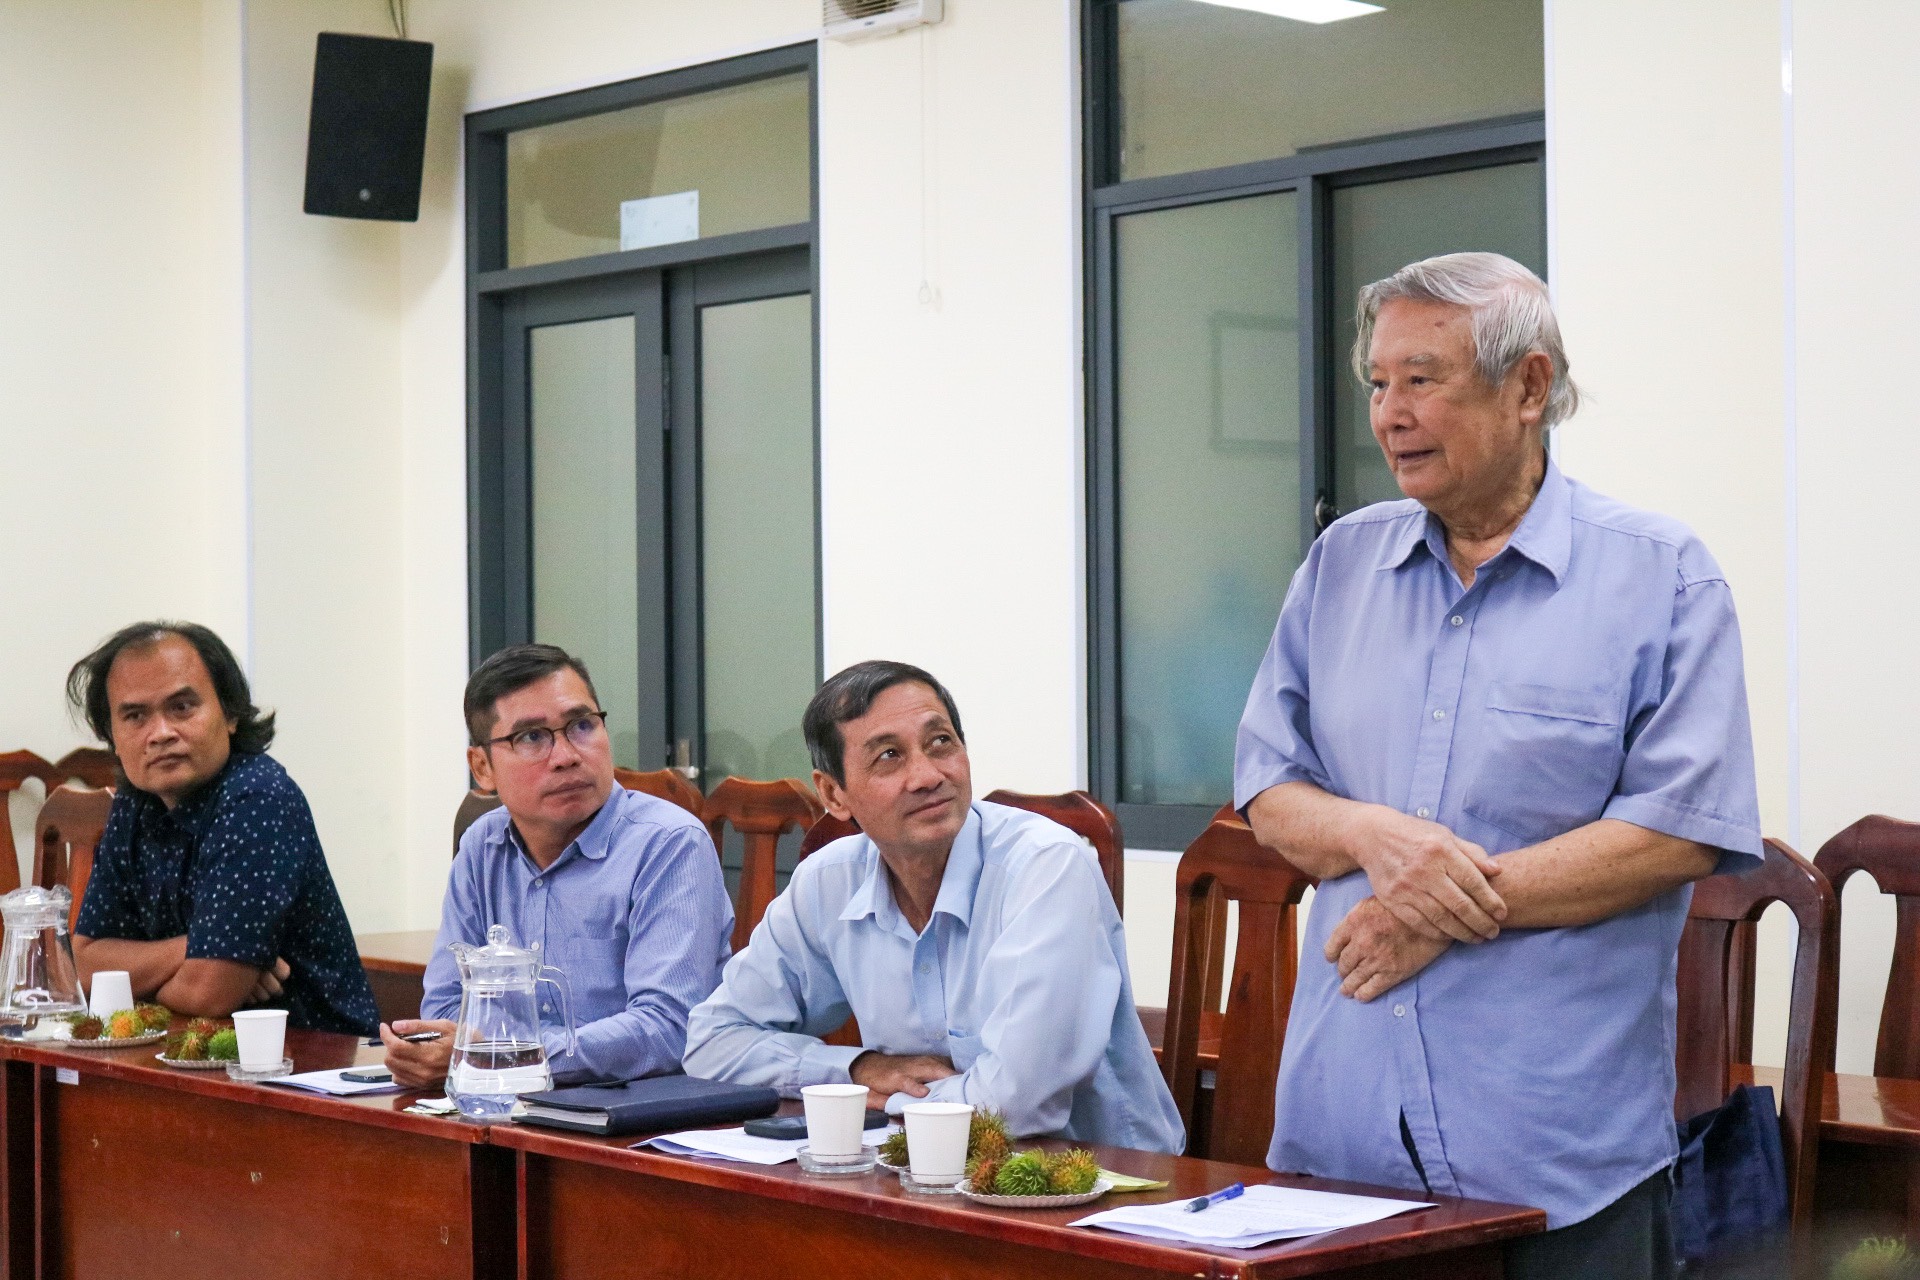 Ông Phạm Thành Lộc - Cty CP NN CNC Thanh Bình, thành viên HĐTV về Khoa học - Kỹ thuật- môi trường ngồi đàu bên trái qua